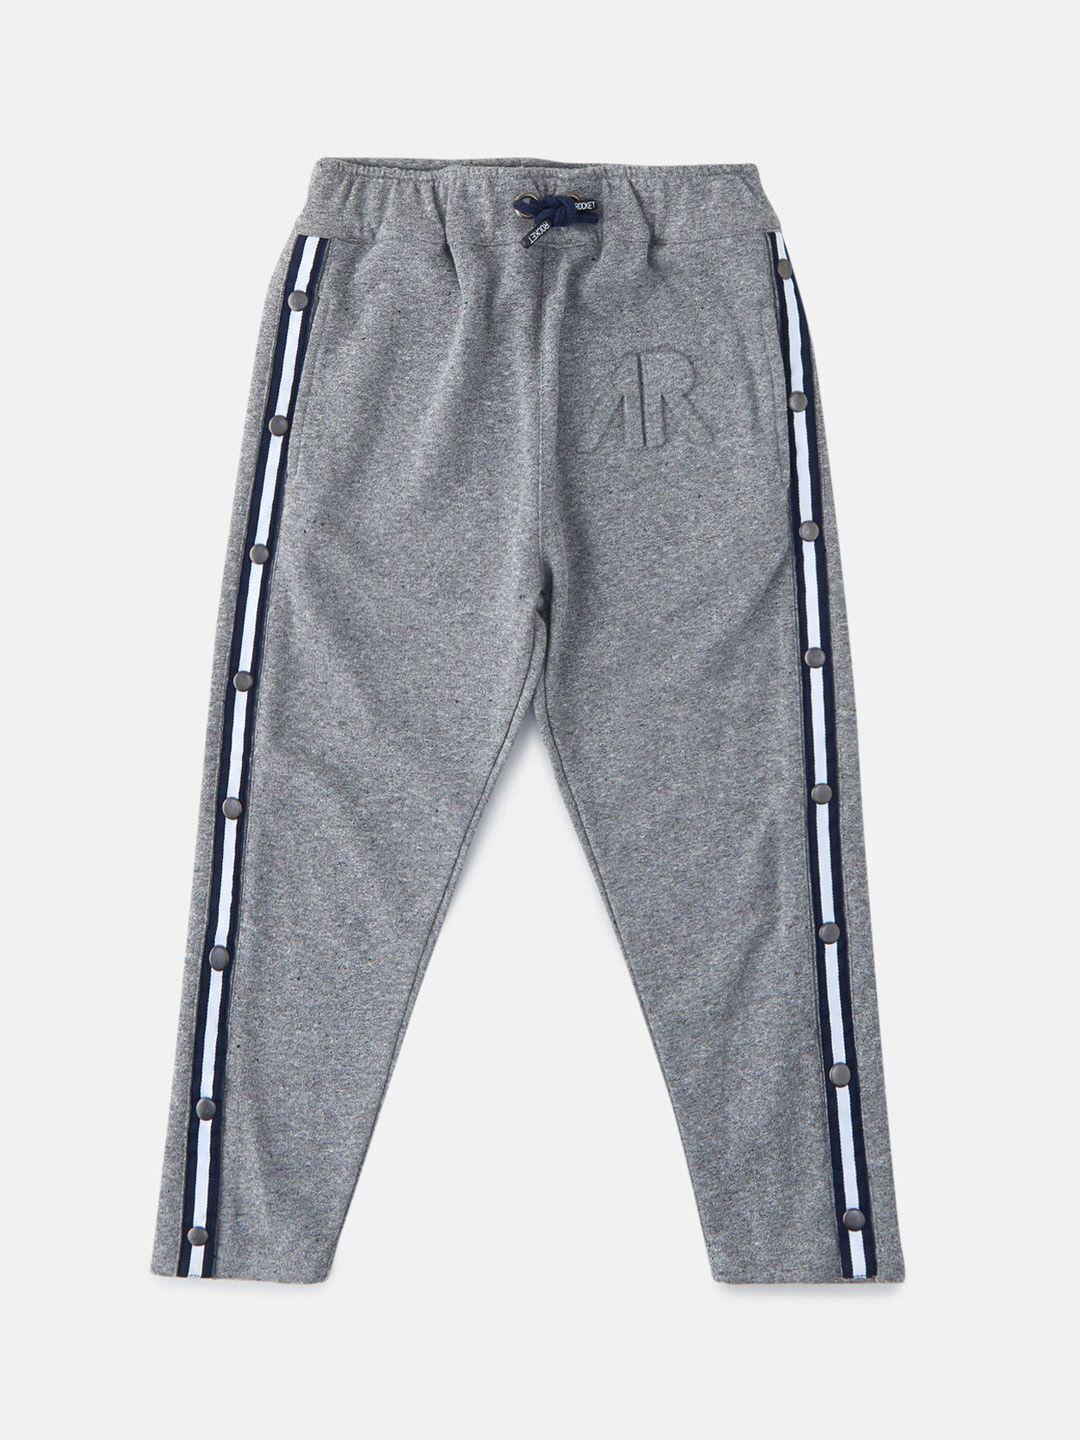 angel-&-rocket-boys-grey-trousers